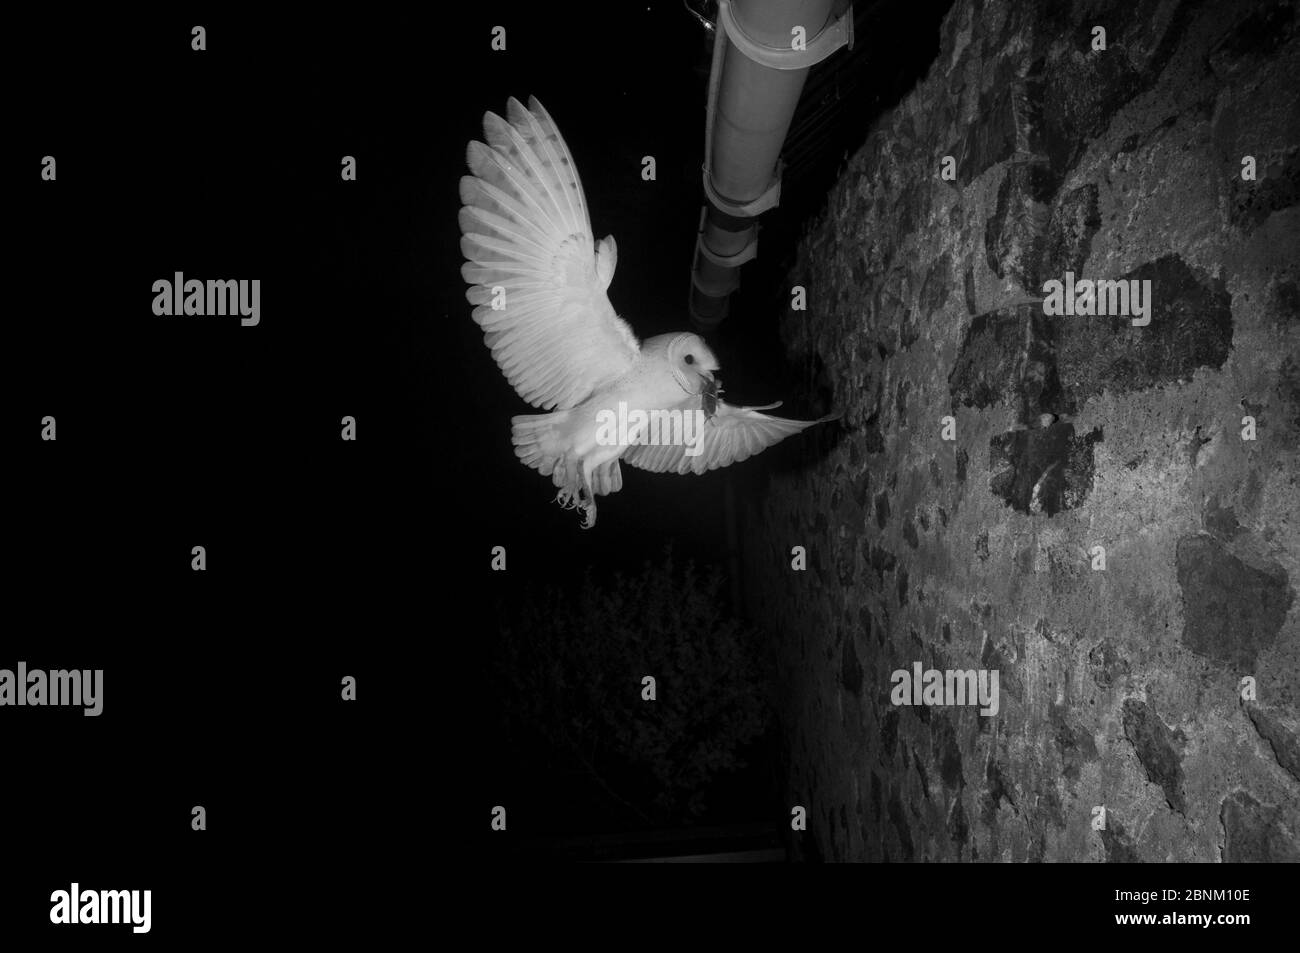 La chouette de la grange (Tyto alba) qui vole pour nicher dans les avant-bouées avec des proies, prise avec lumière infrarouge la nuit France, juin. Banque D'Images